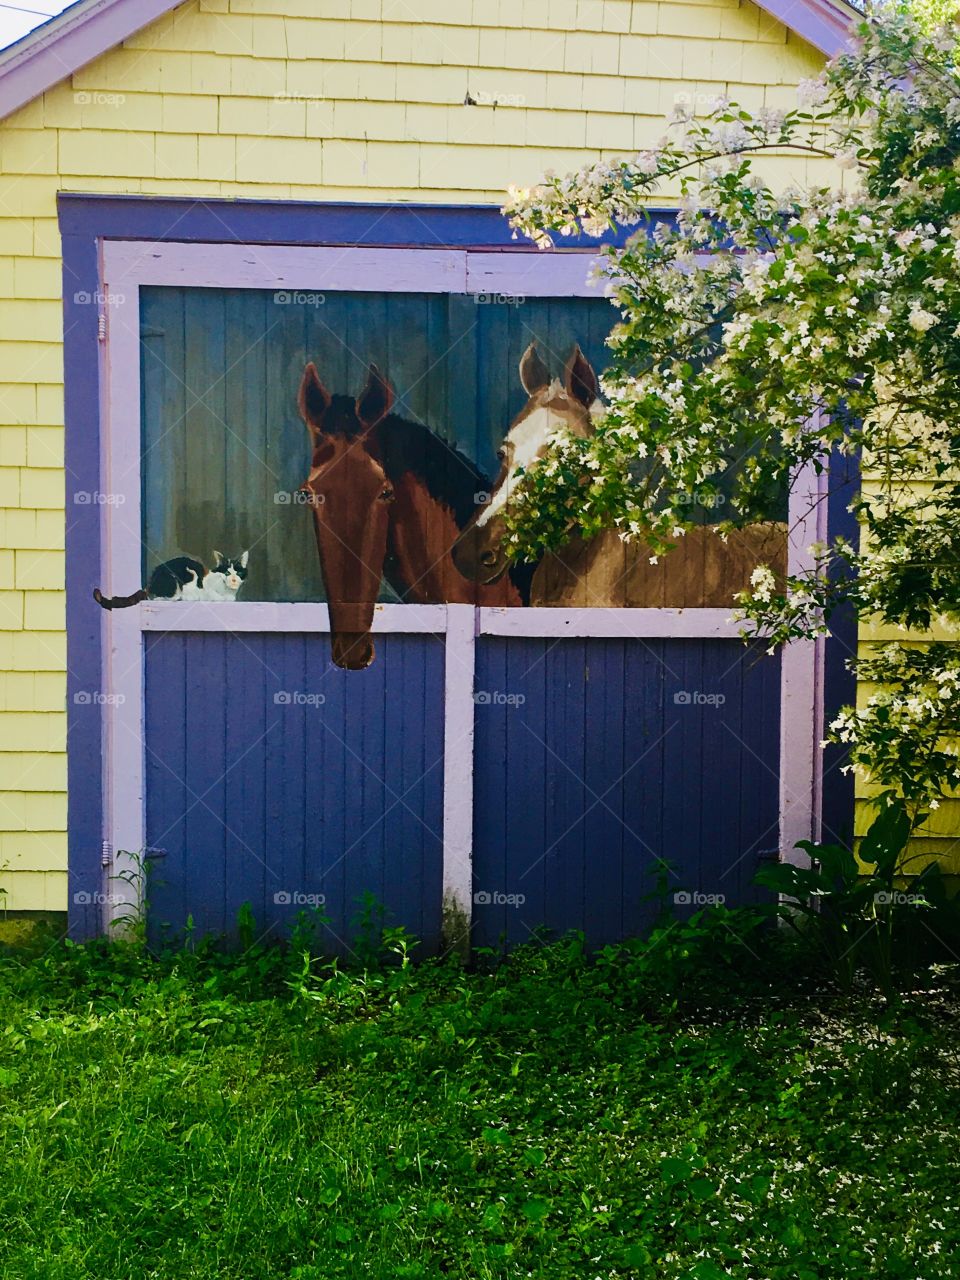 Horse Garage: Who’s Hiding?